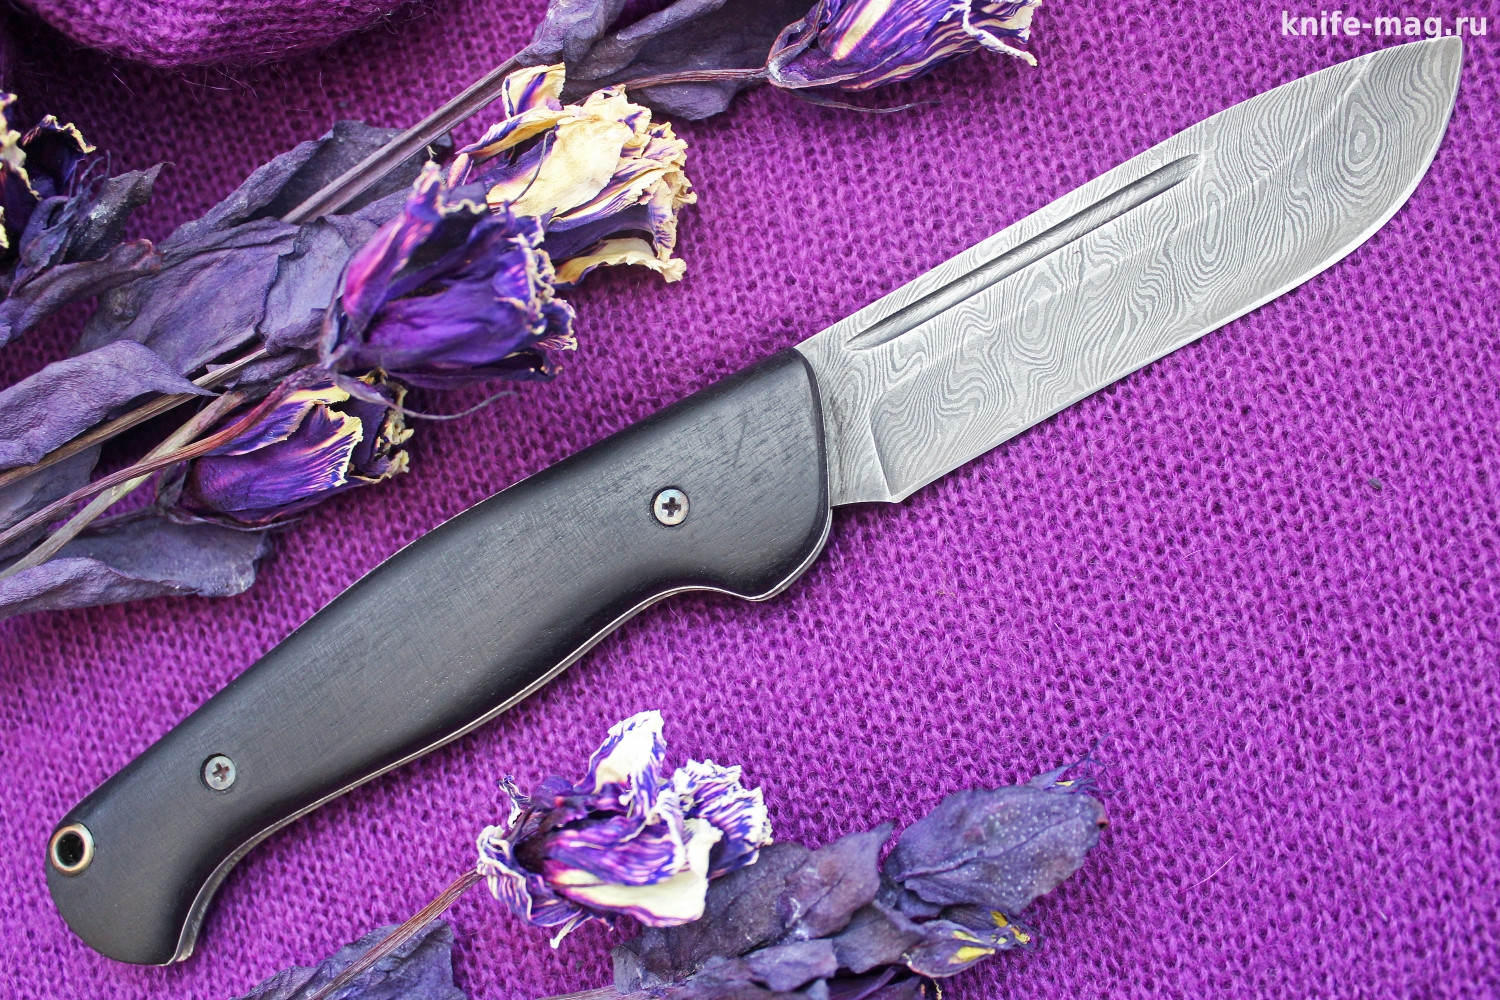 Купить нож Складной нож Партнер Дамаск (накладки граб) | KNIFE-MAG.RU